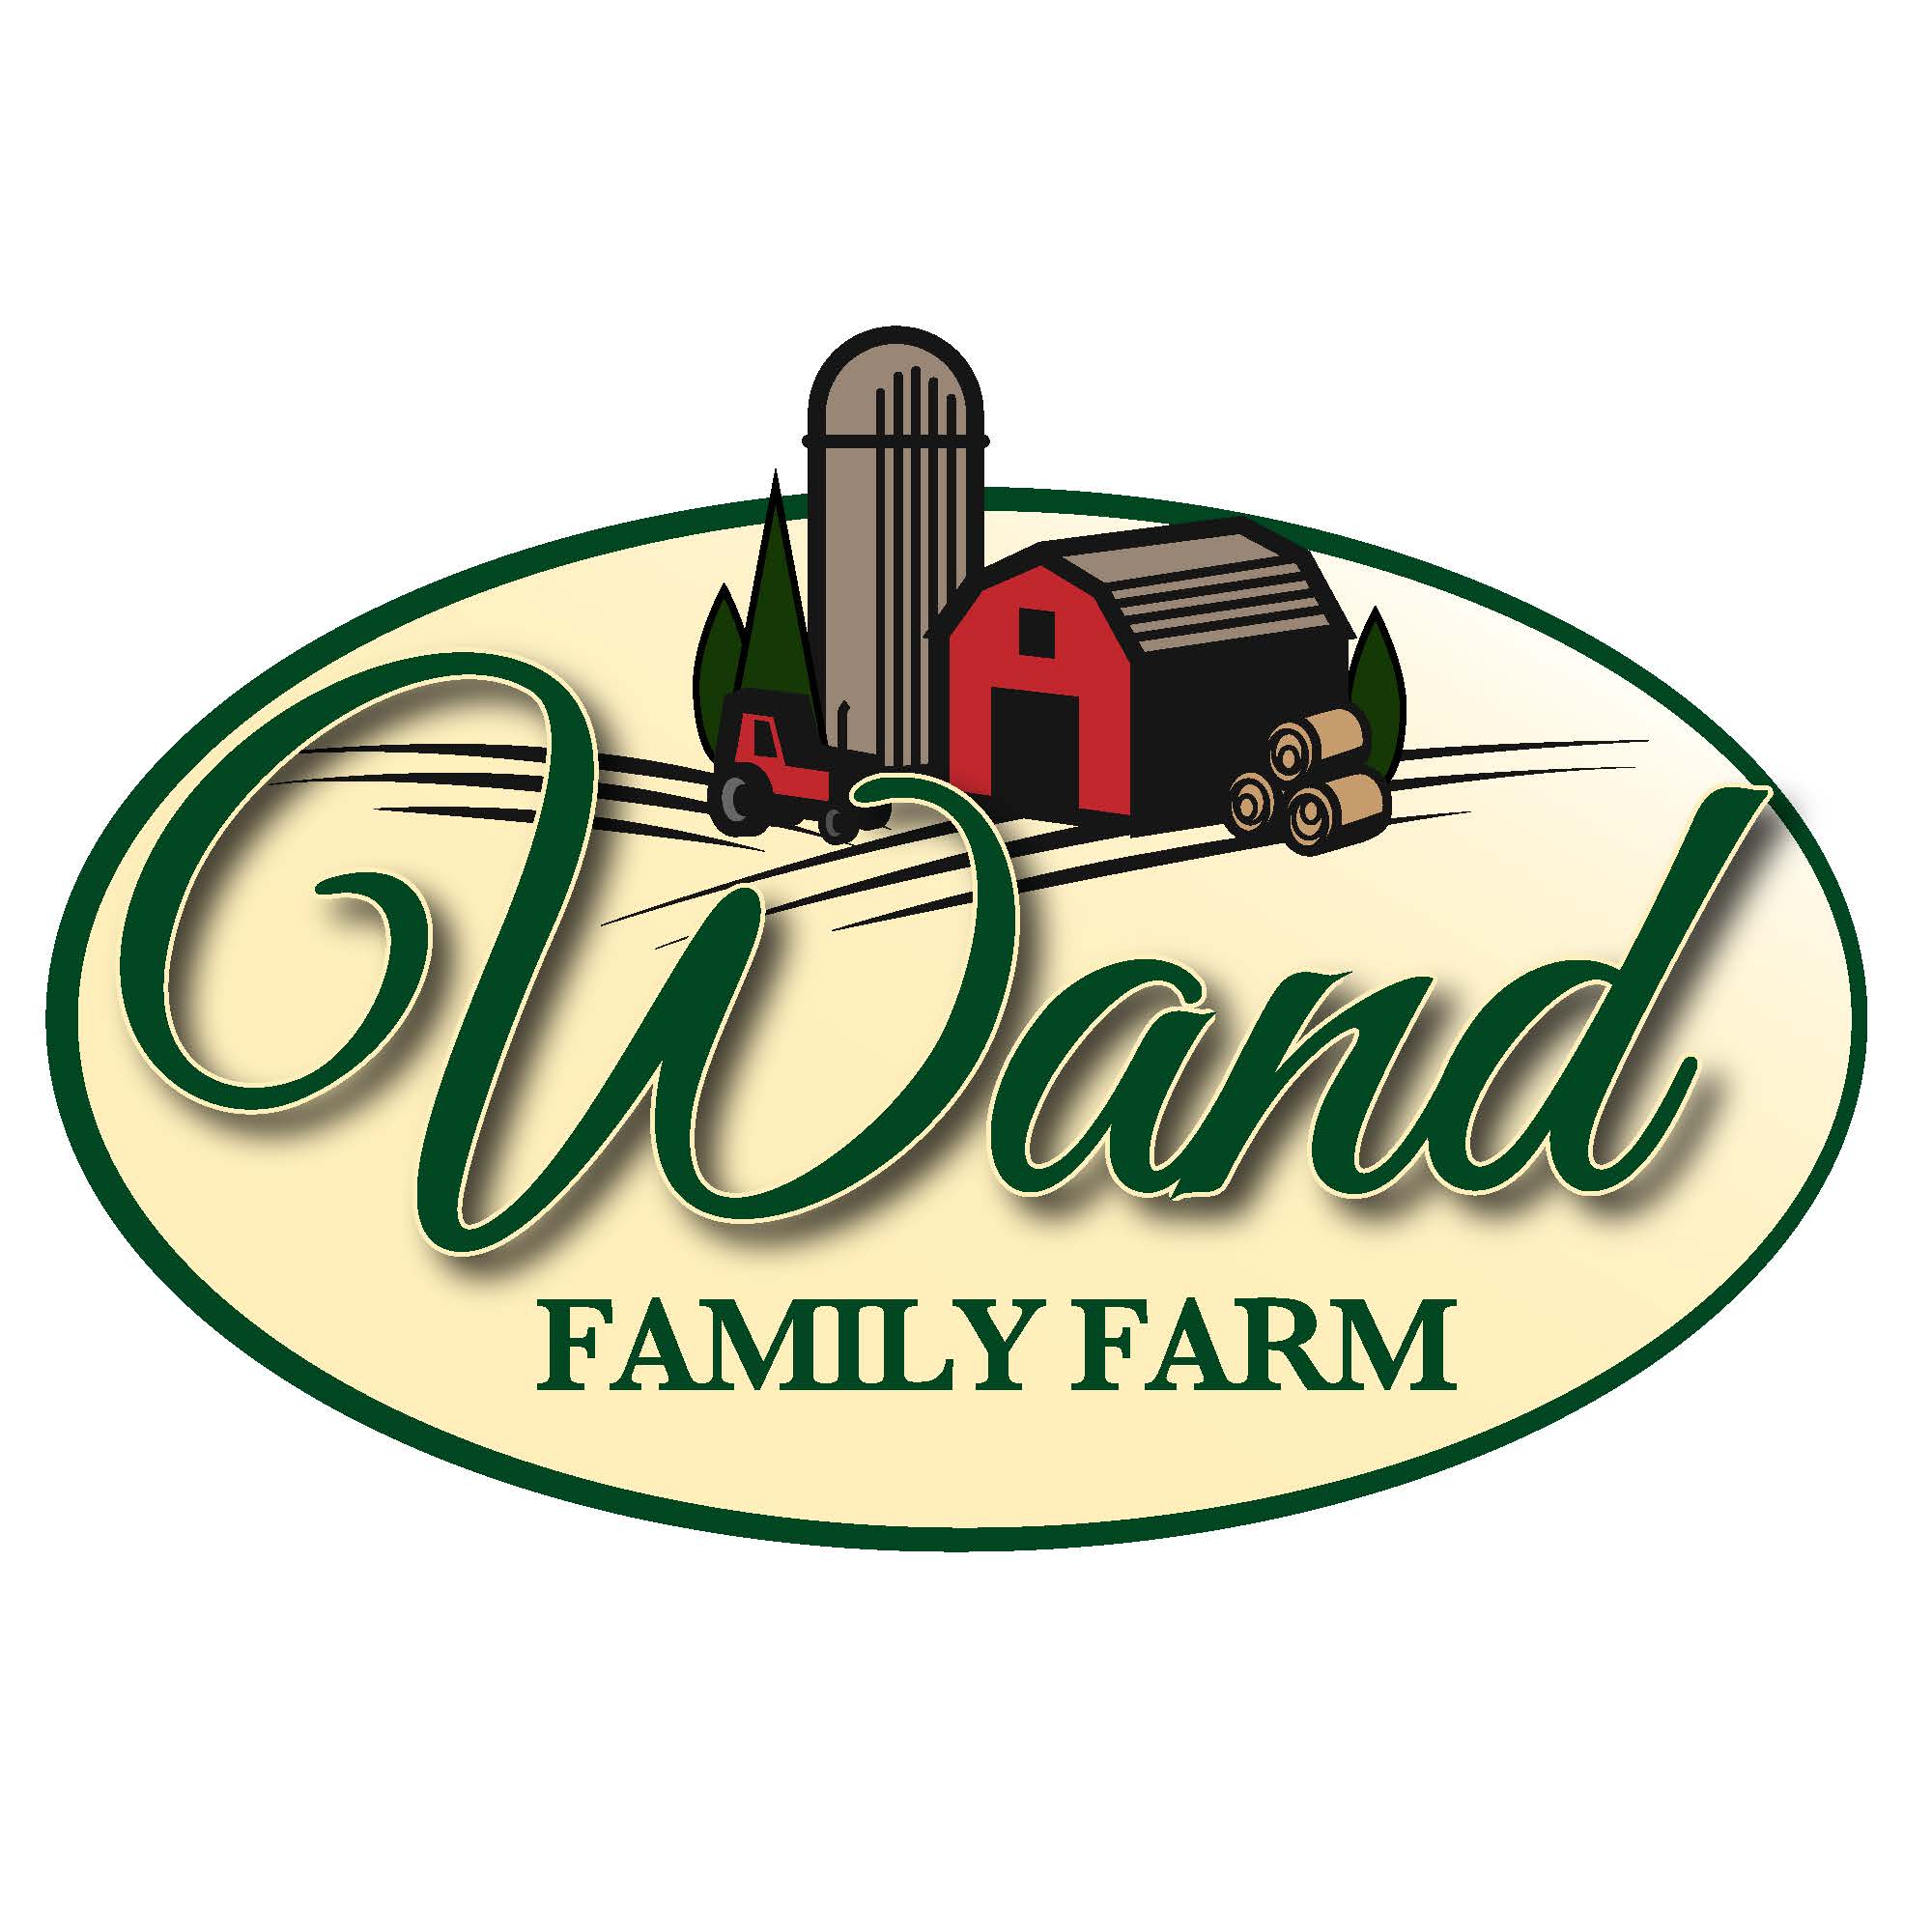 Wand Family Farm